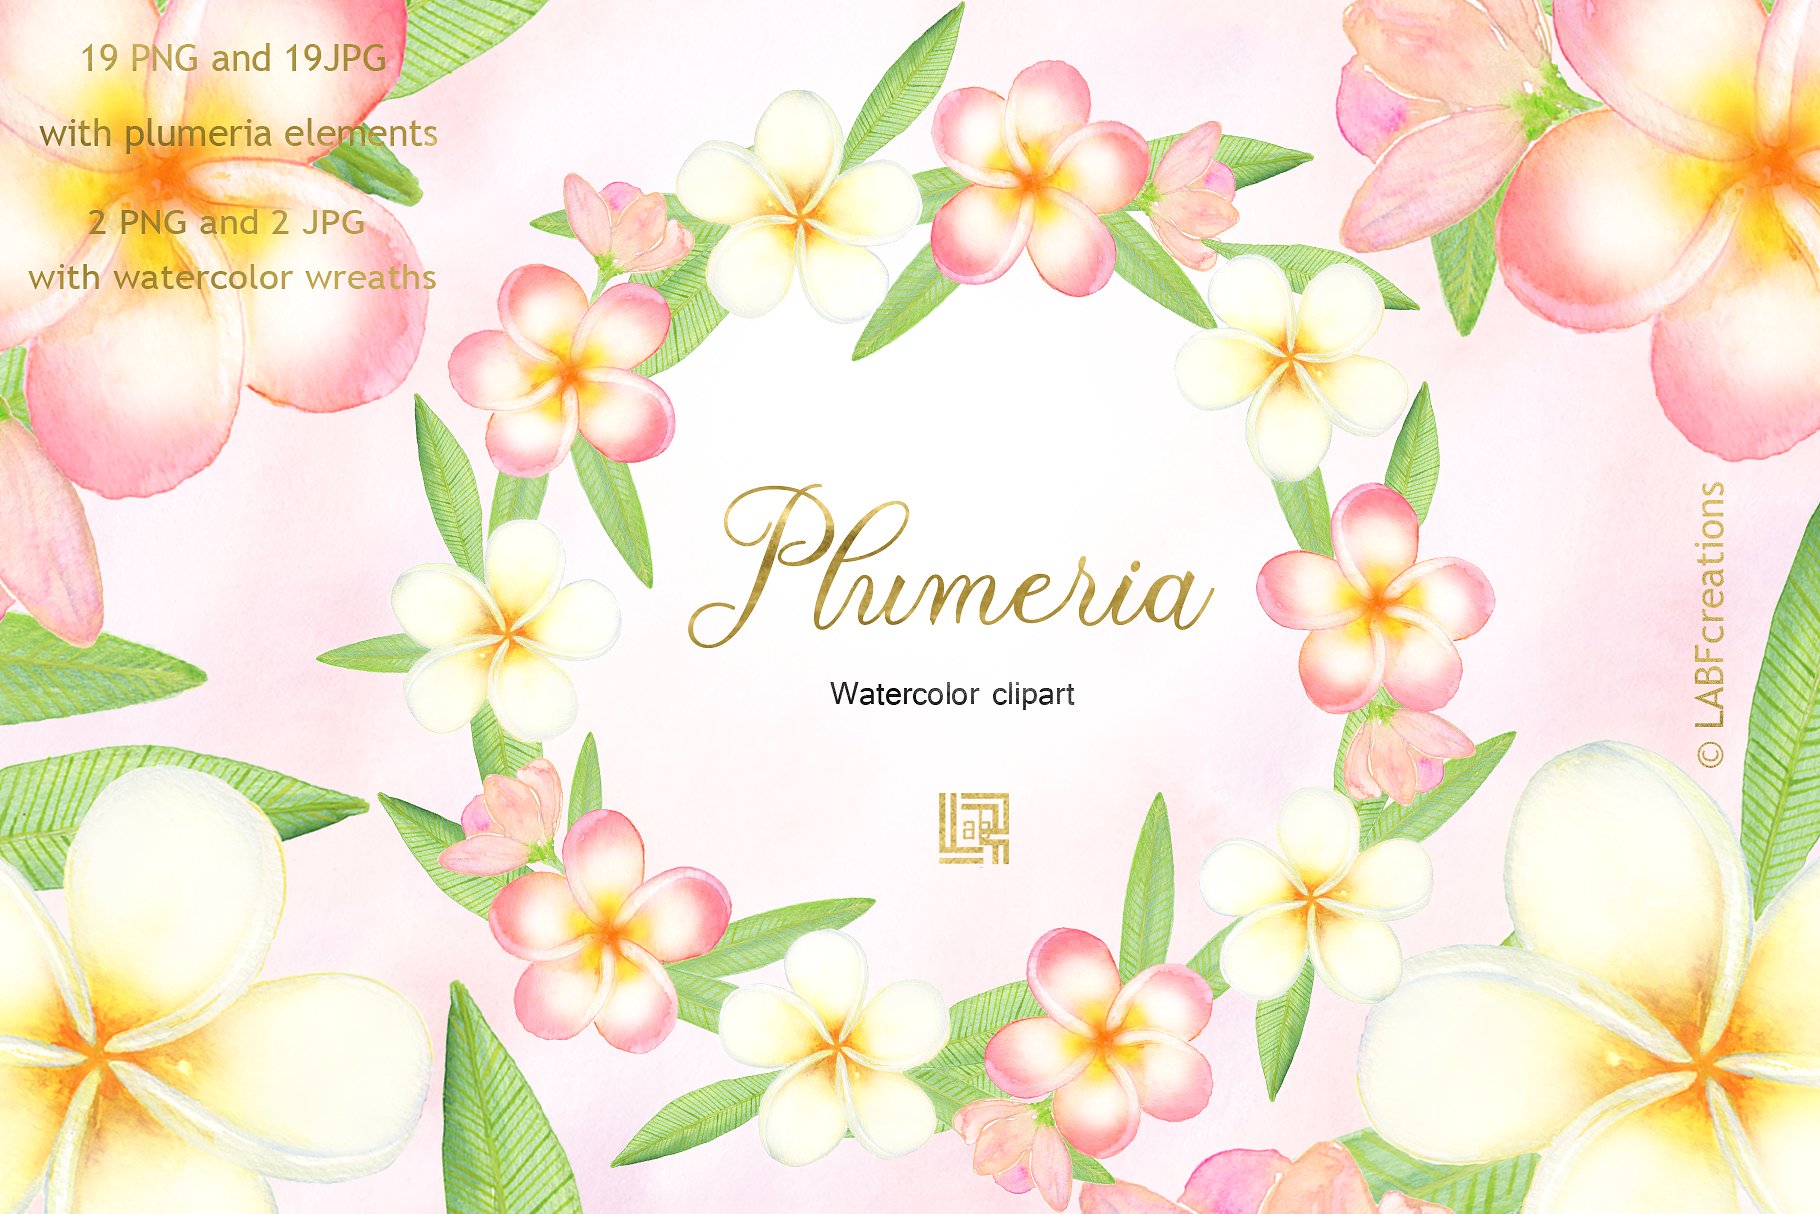 柔和优雅的手绘水彩热带花卉剪贴画 Plumeria Tropical watercolor flowers插图(1)